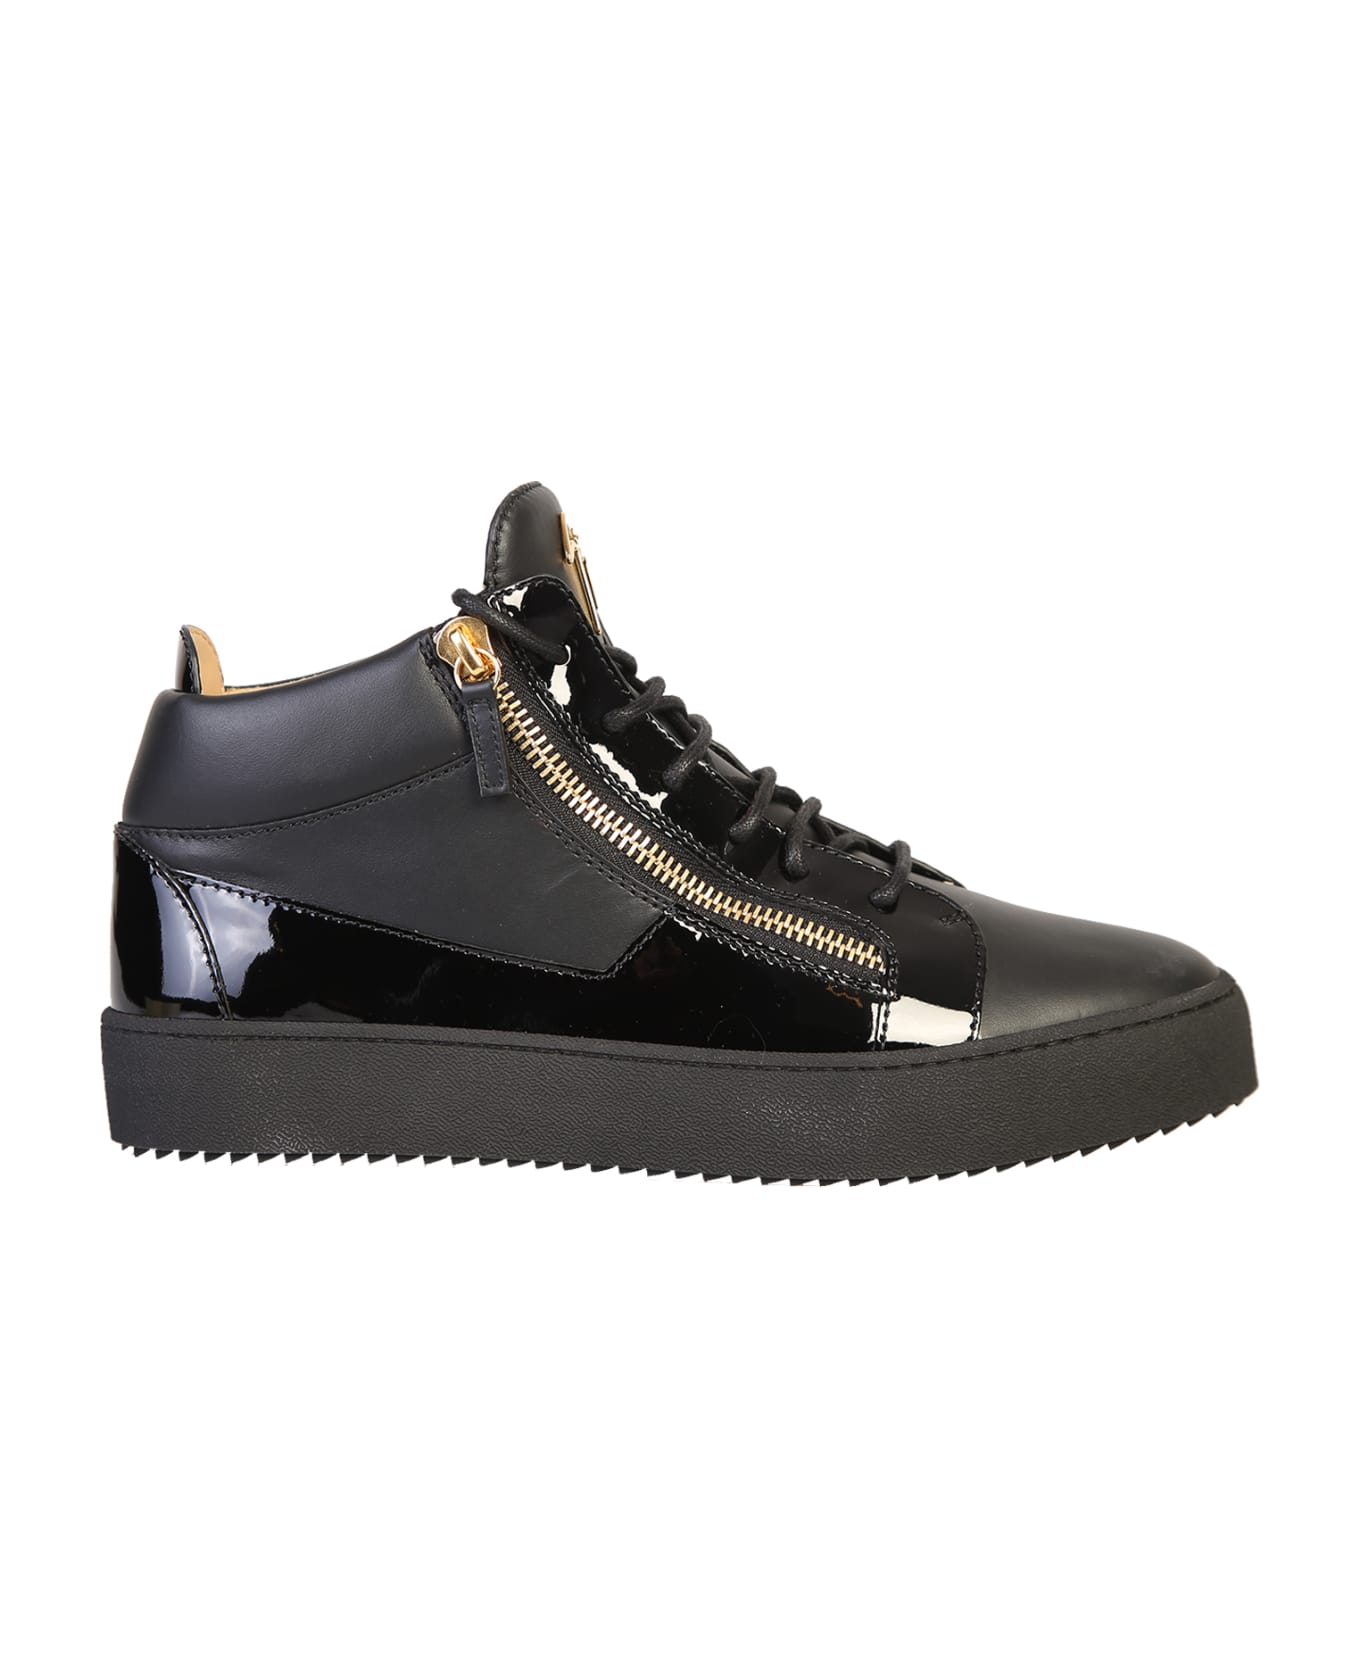 Giuseppe Zanotti Branded Sneakers - Black